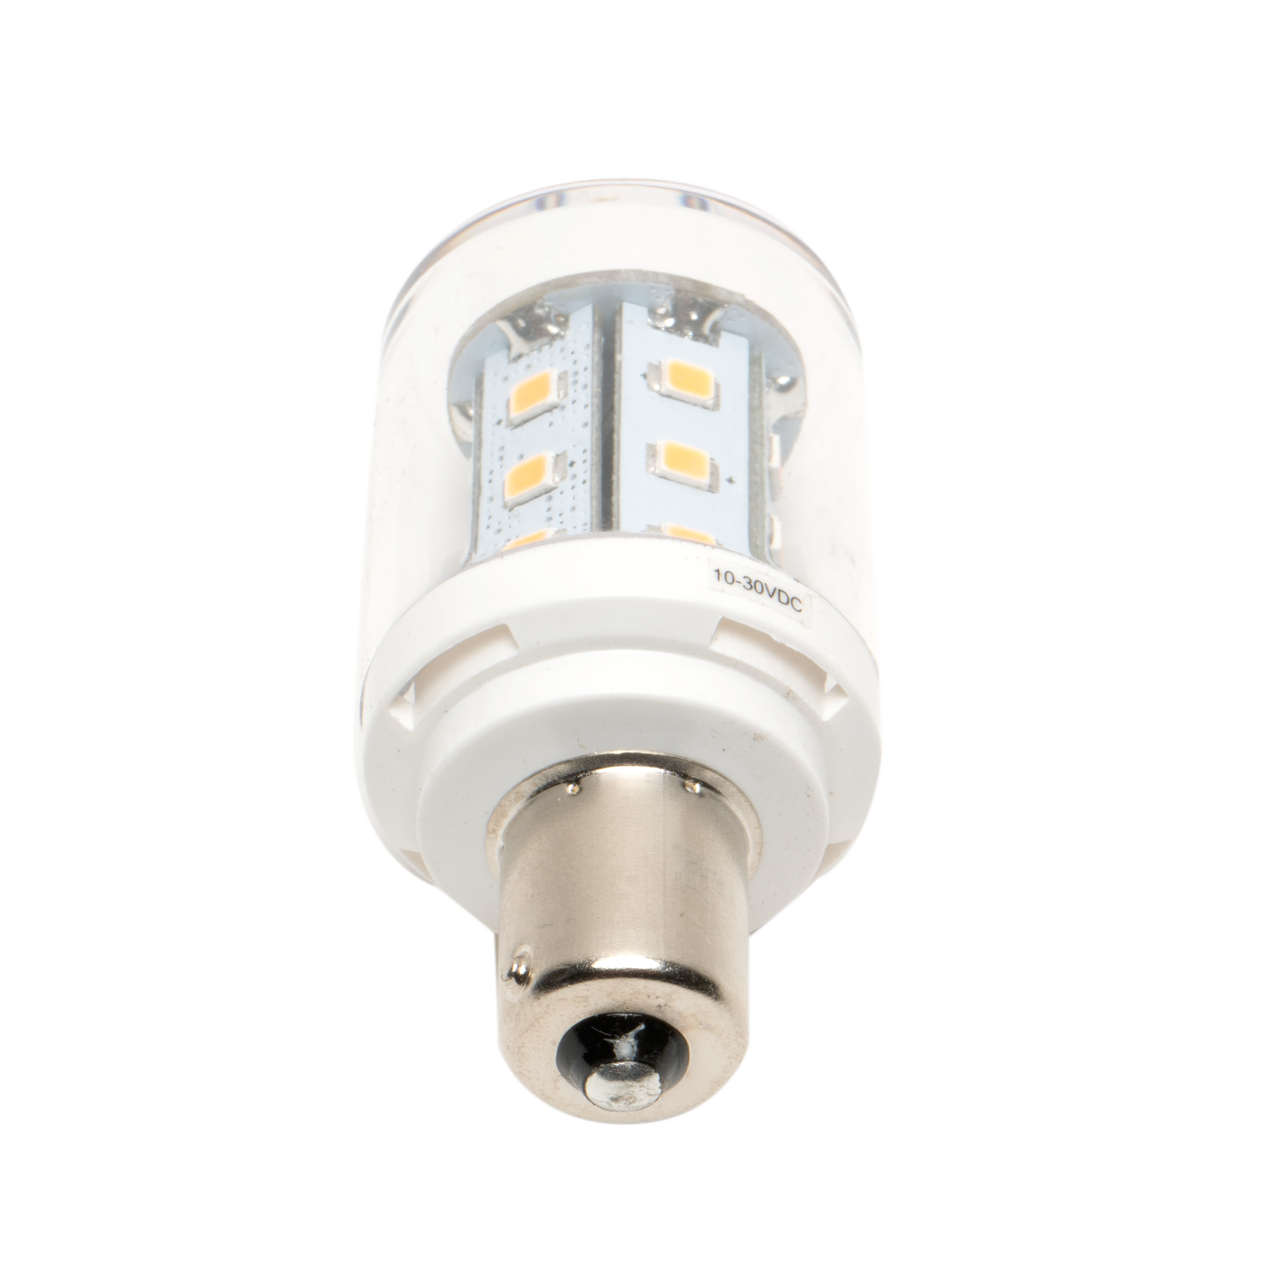 Leisure LED 1156 Light Bulb 24SMD 350 Lumen 1141 1156 RV Interior LED Light 24-SMD Camper Trailer Lamp Bulb 10-24V